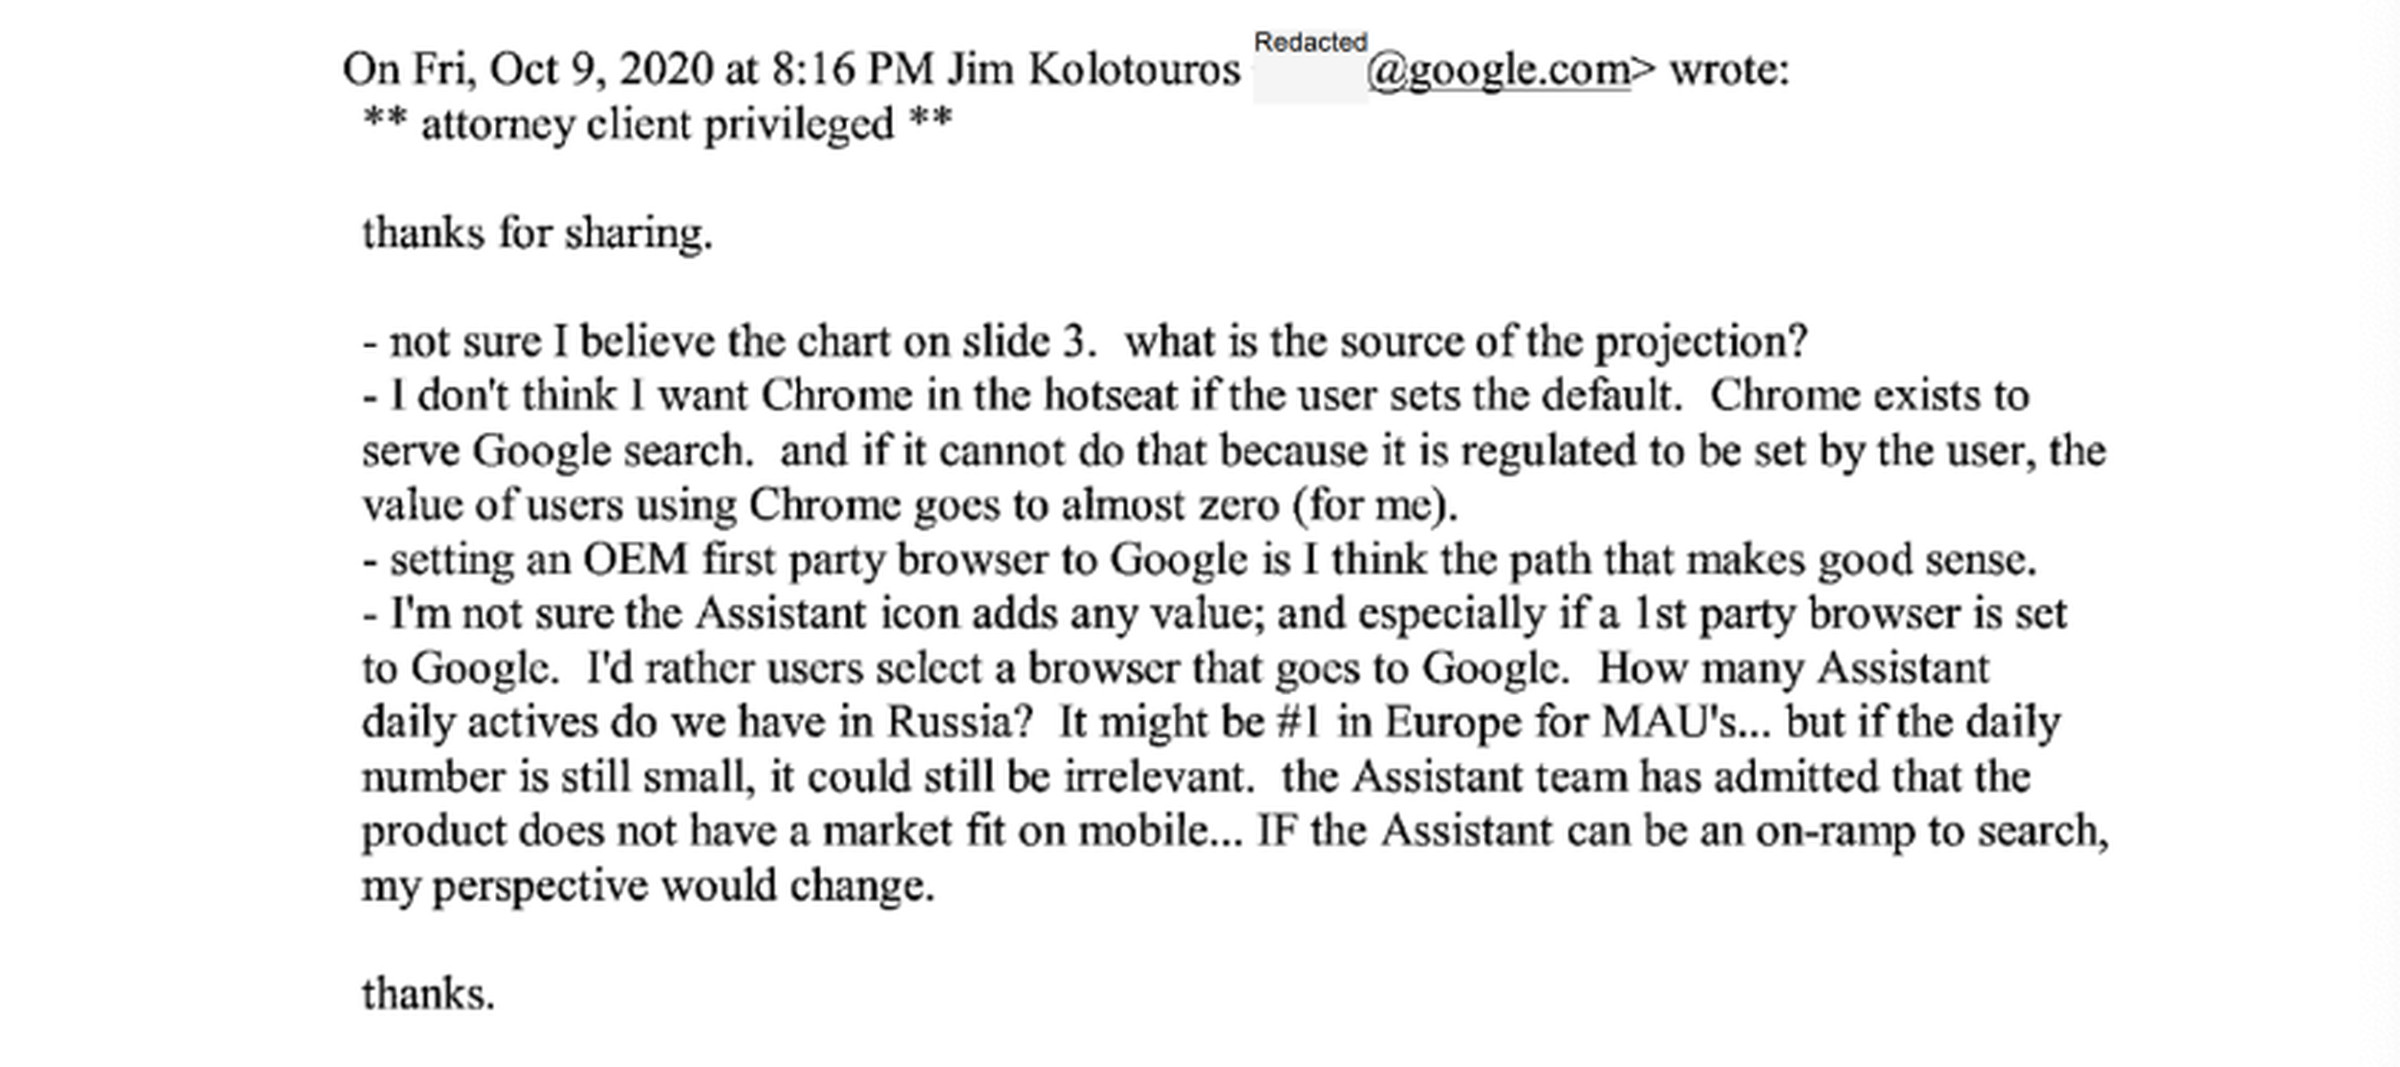 A screenshot of an internal Google email sent from Google’s Jim Kolotouros.